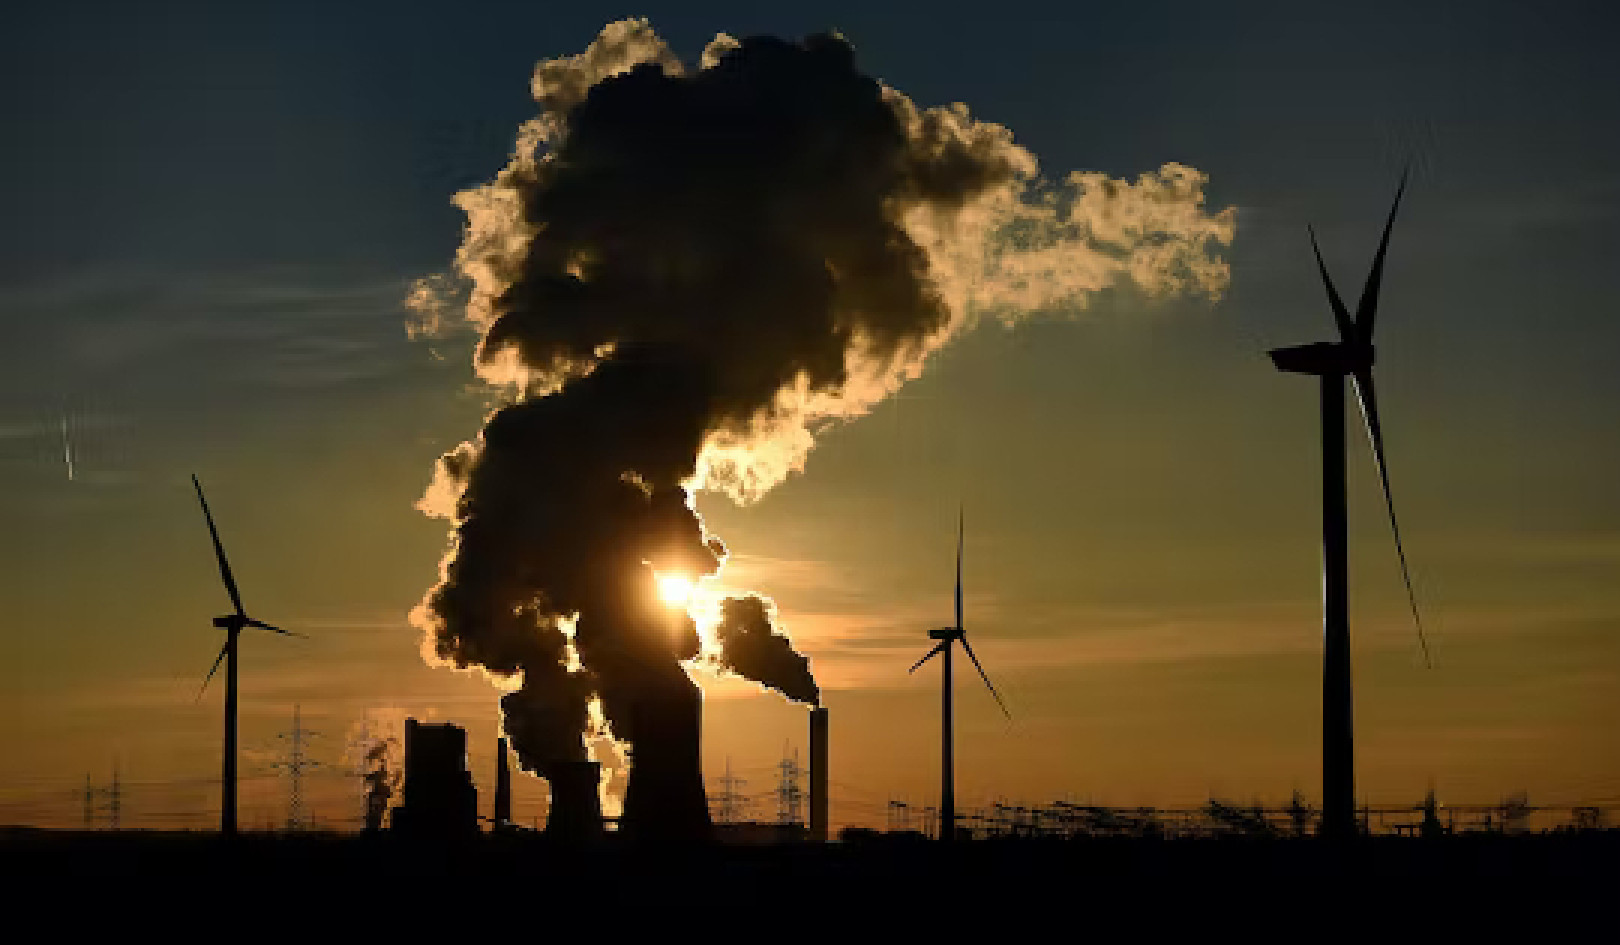 Cum își imaginează liderii energetici să contracareze schimbările climatice în viitor